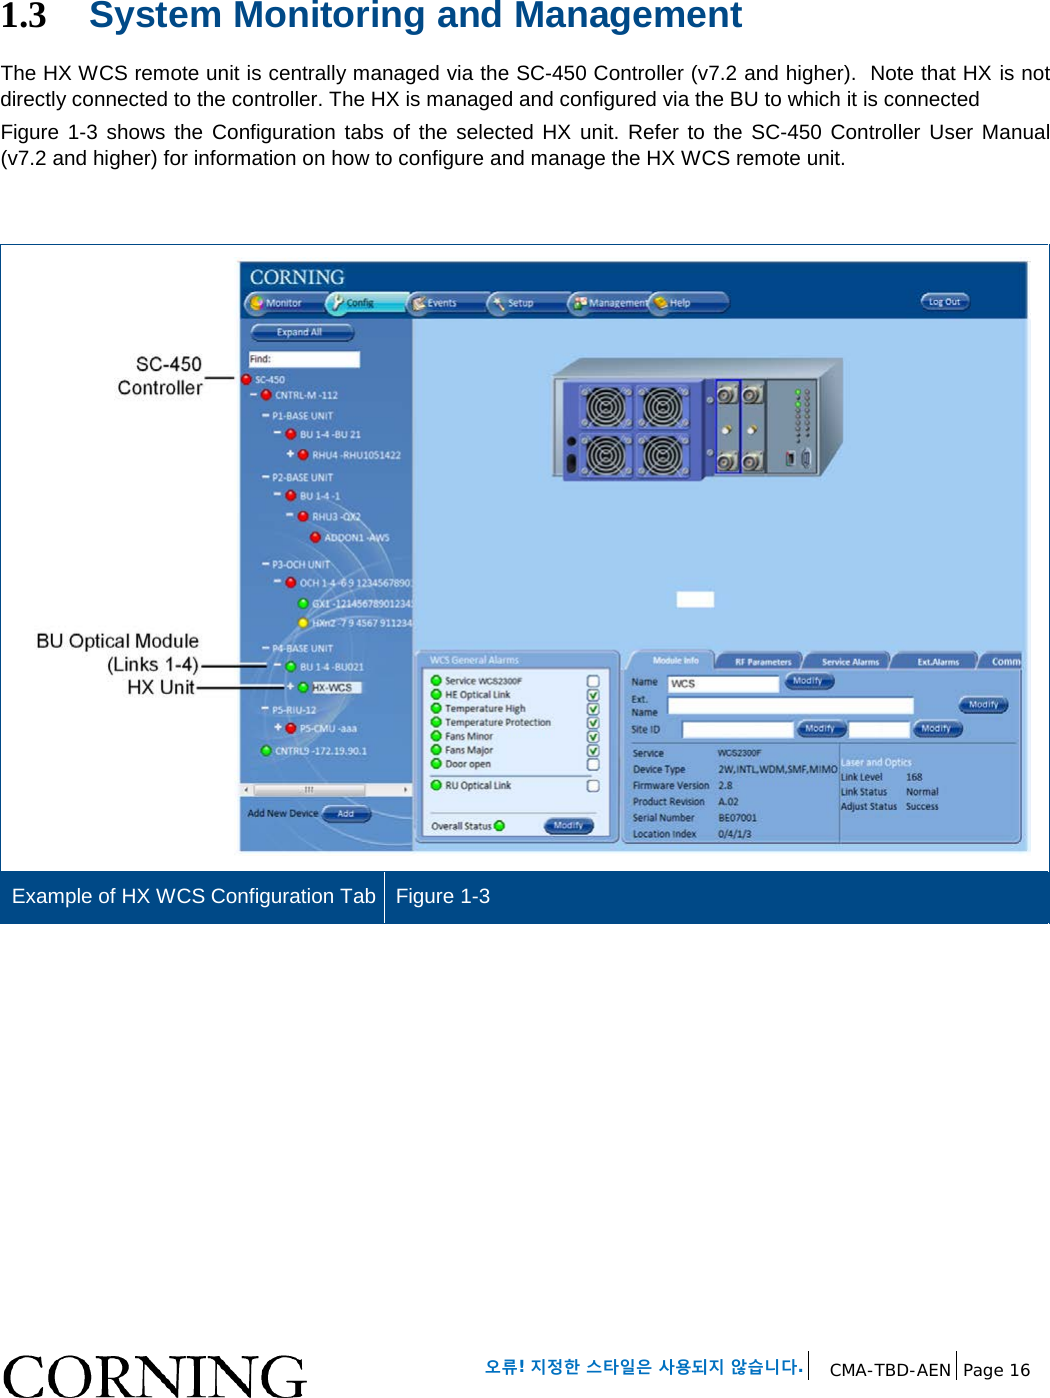   오류! 지정한 스타일은 사용되지 않습니다. CMA-TBD-AEN Page 16   1.3 System Monitoring and Management The HX WCS remote unit is centrally managed via the SC-450 Controller (v7.2 and higher).  Note that HX is not directly connected to the controller. The HX is managed and configured via the BU to which it is connected Figure  1-3 shows the Configuration tabs  of the selected HX unit. Refer to the SC-450 Controller User Manual (v7.2 and higher) for information on how to configure and manage the HX WCS remote unit.    Example of HX WCS Configuration Tab Figure 1-3    